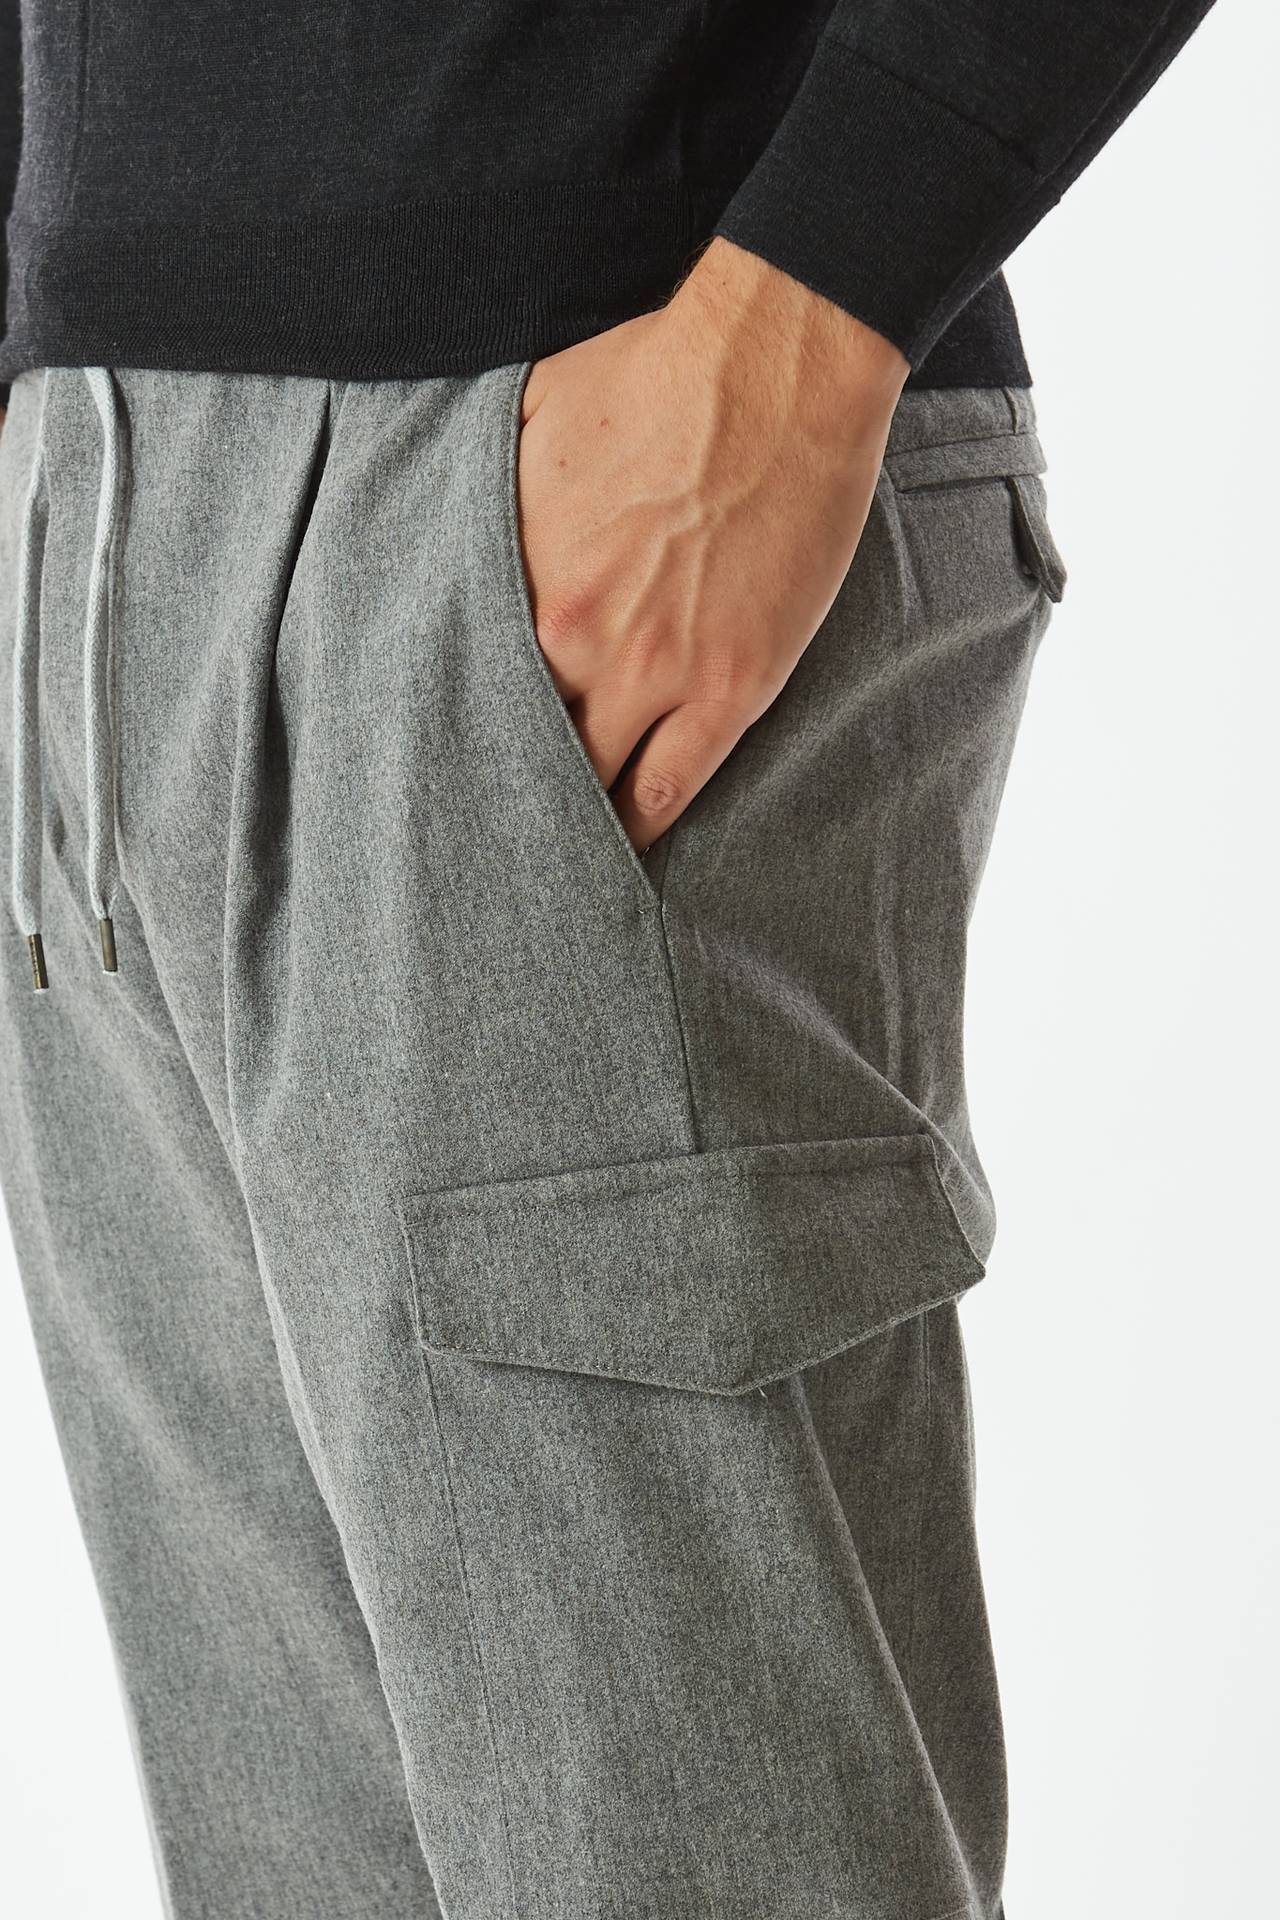 Pantalone SOFT FIT in flanella grigio 